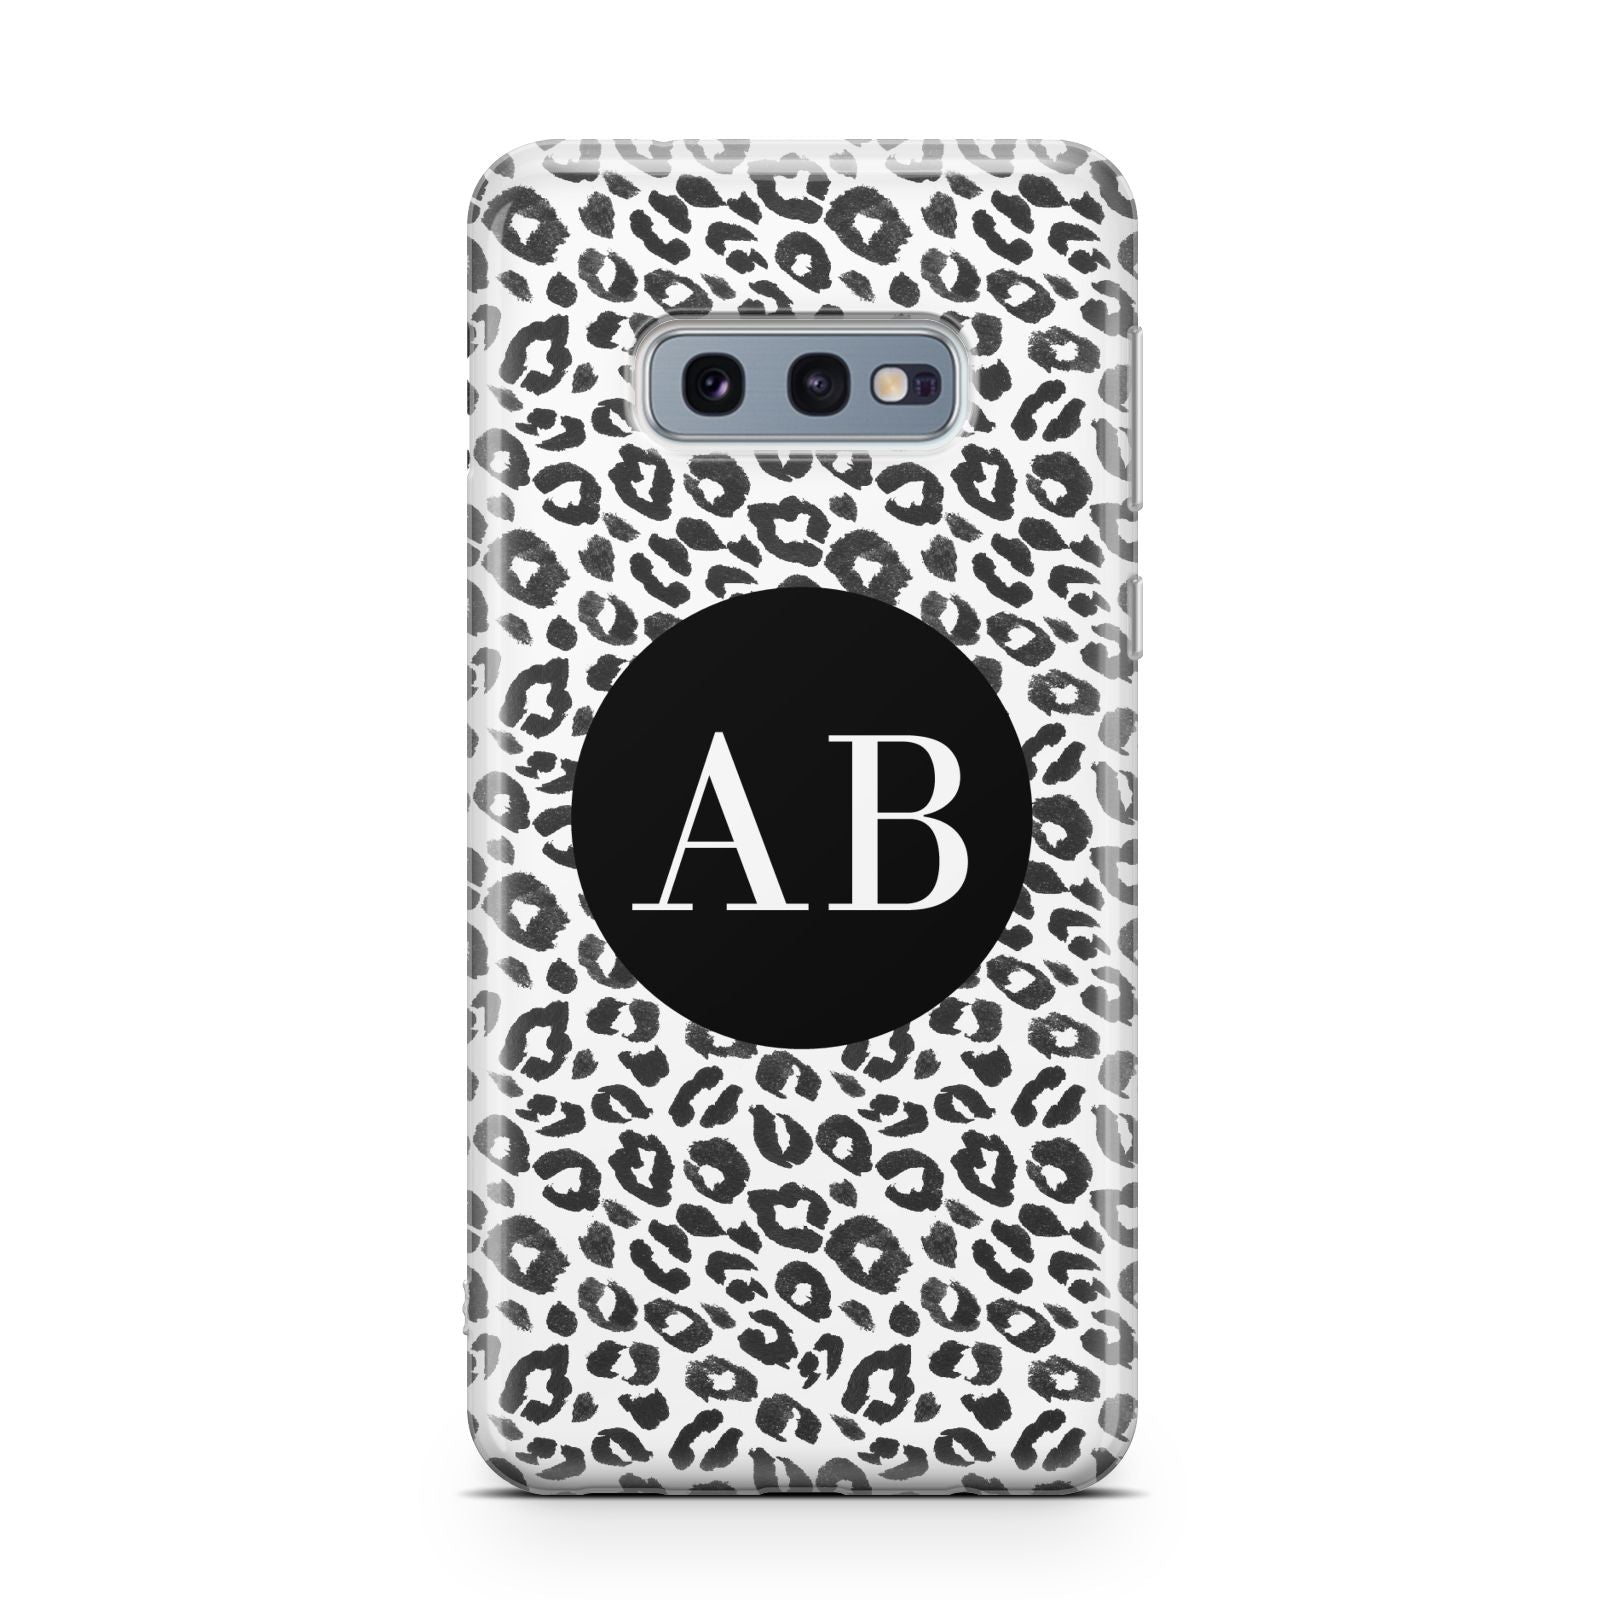 Leopard Print Black and White Samsung Galaxy S10E Case